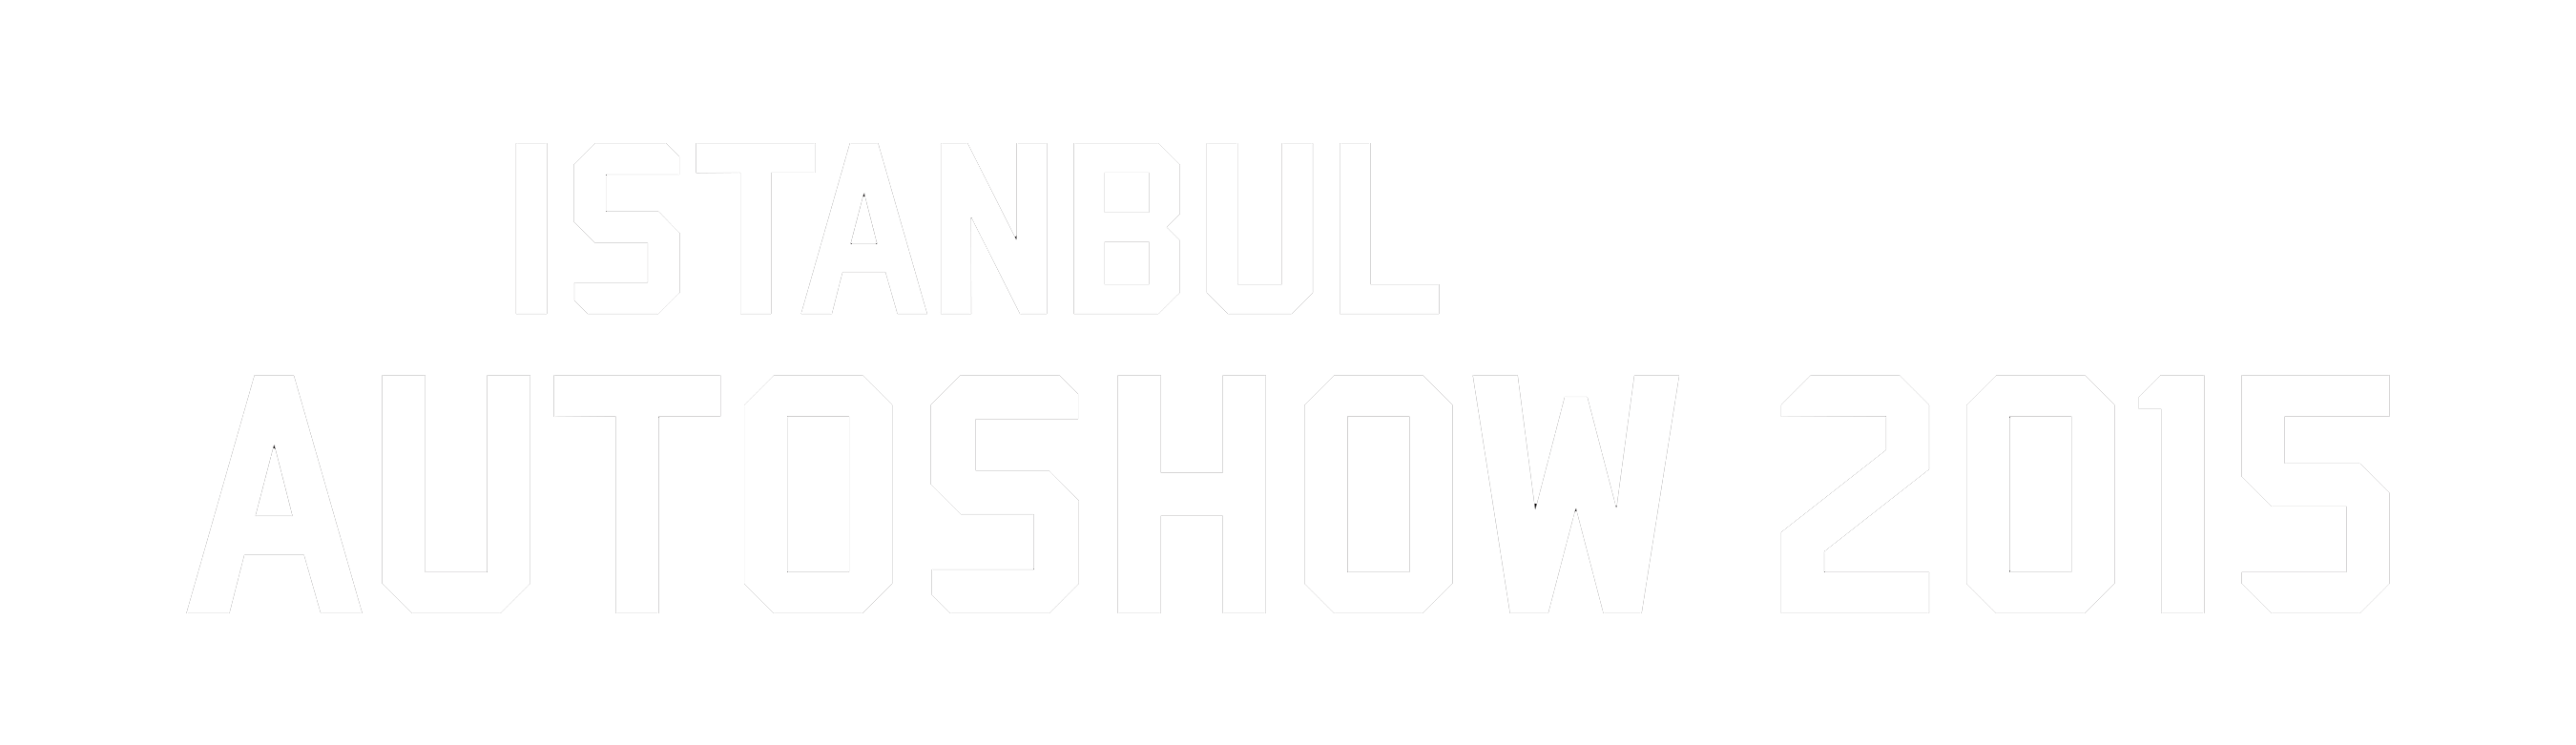 Istanbul Autoshow 2015 Logo